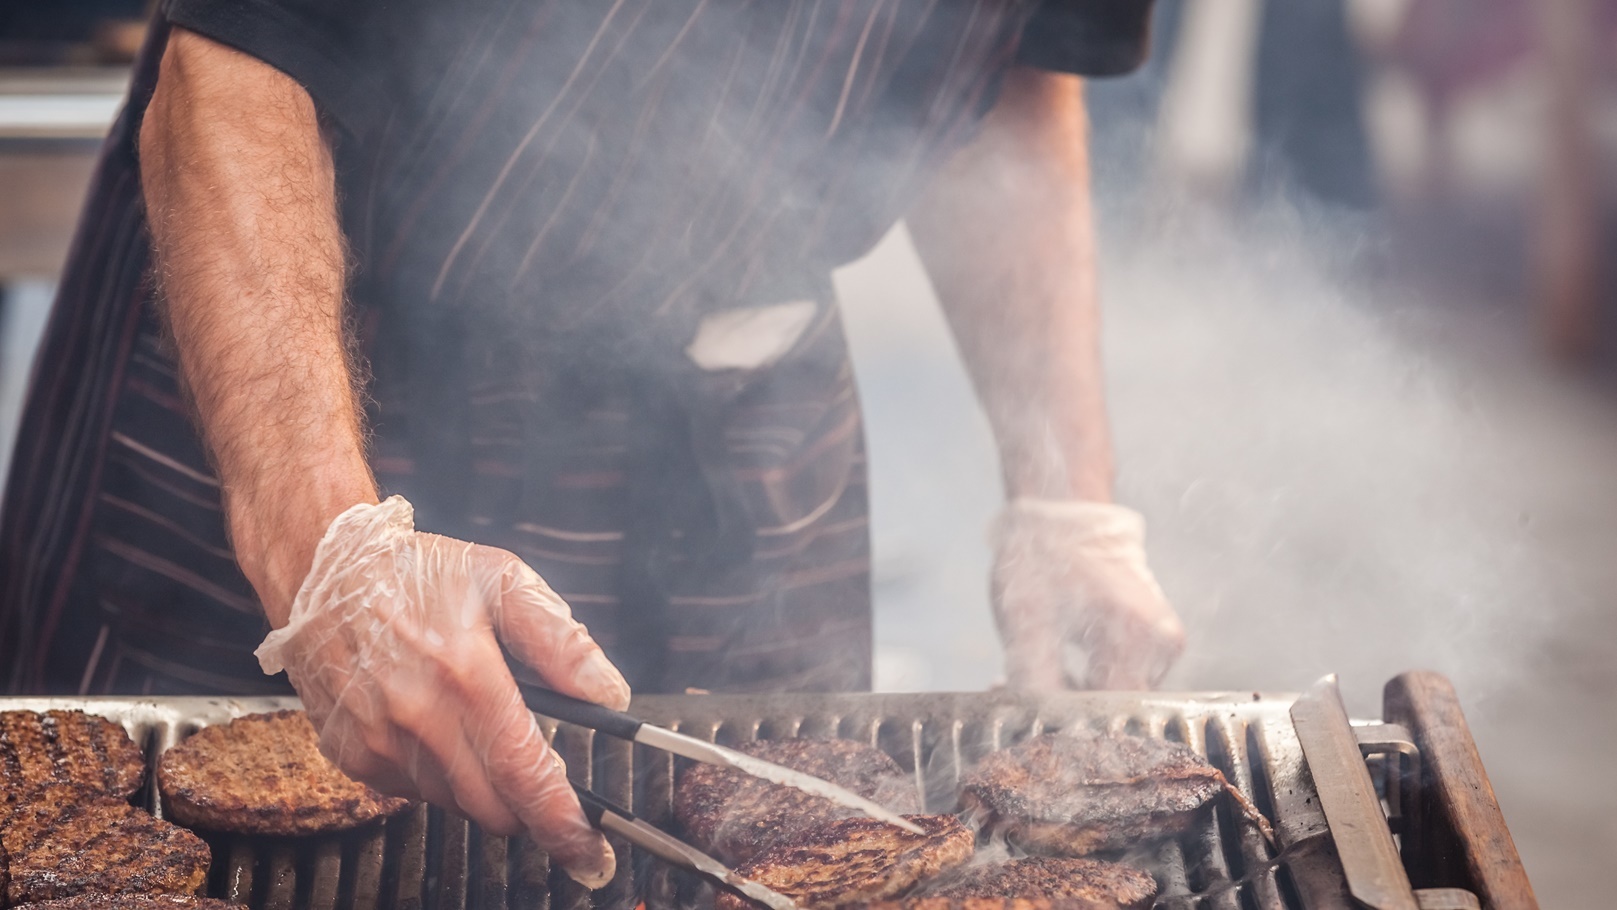 burgers-on-barbecue-2021-08-26-16-22-11-utc